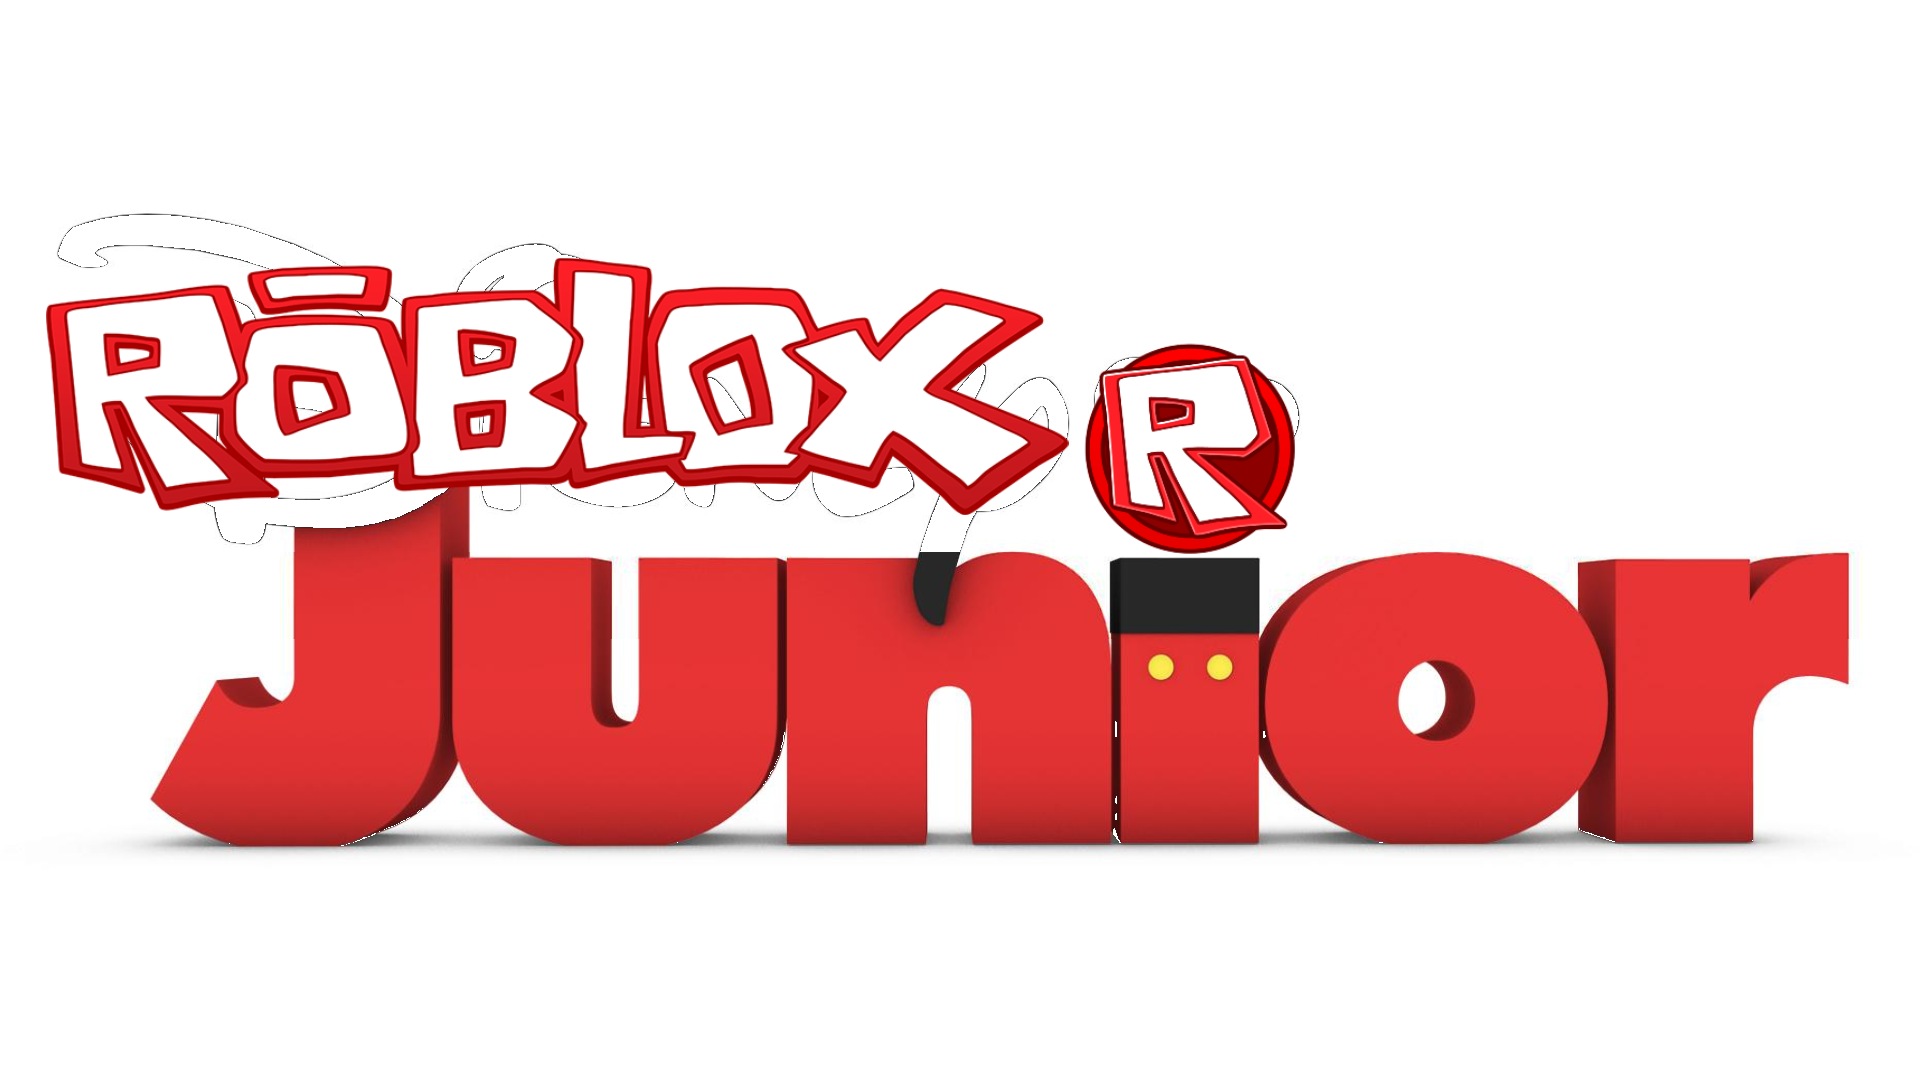 Roblox junior logo 2011-2014 by amardion1p on DeviantArt